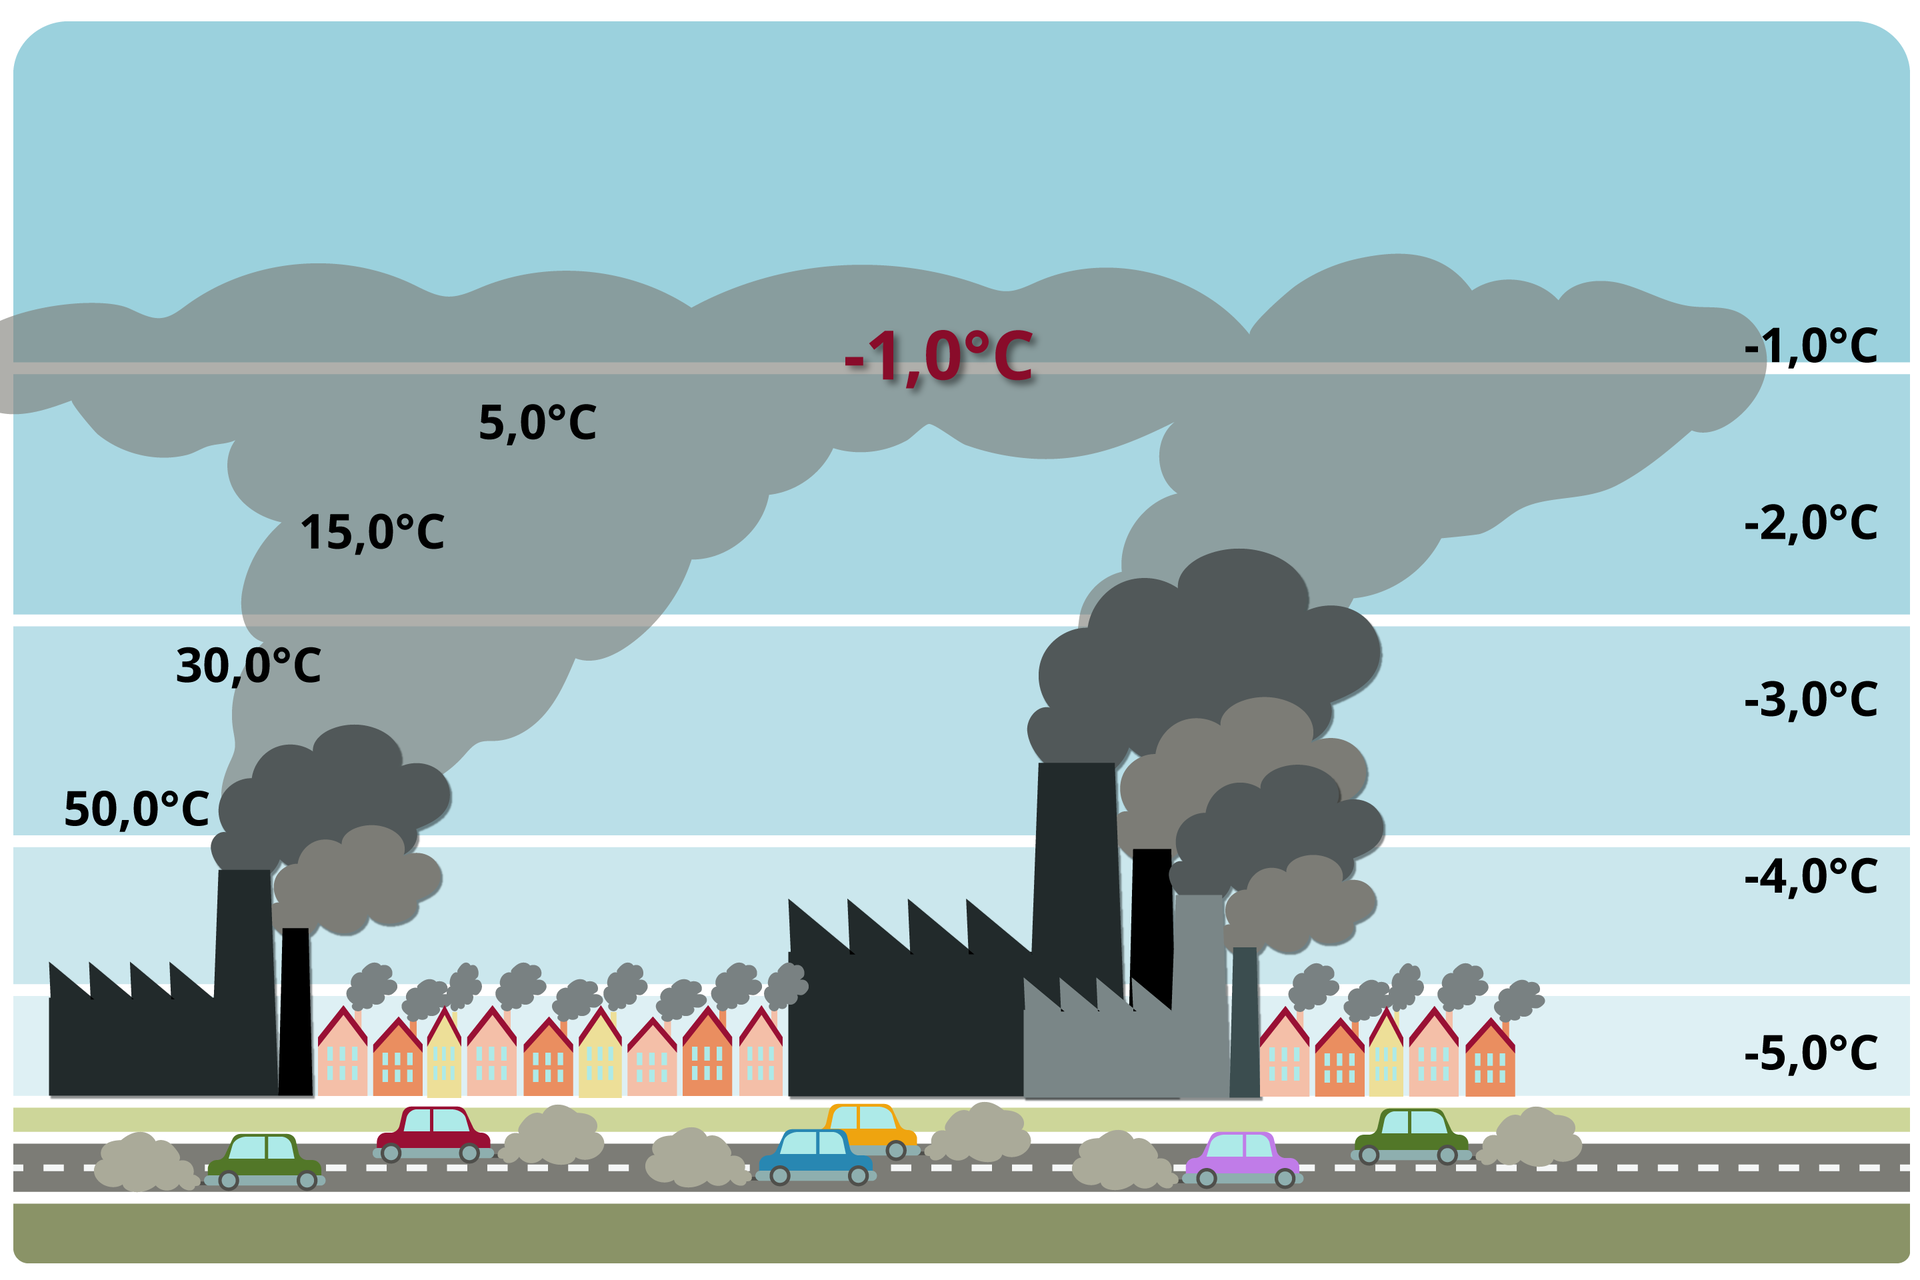 Ilustracja przedstawia miasto z budynkami i kominami fabryk, z których unosi się szary dym. Na pierwszym planie jest droga z samochodami. Przy rurach wydechowych aut są obłoki, które symbolizują spaliny. Po prawej stronie ilustracji jest temperatura - na dole minus 5 stopni Celsjusza, na wysokości kominów minus 4 stopnie Celsjusza, następnie minus 3 stopnie Celsjusza, aż stopniowo do minus jednego stopnia. Po lewej stronie ilustracji na wysokości dymu z kominów jest 50 stopni Celsjusza, nieco wyżej 30 stopni, następnie 15 stopni i 5 stopni. Dym z kominów po lewej  i prawej stronie zdjęcia łączy się ze sobą na górze ilustracji. Na połączeniu zaznaczono minus jeden stopień Celsjusza (jest na wysokości minus jednego stopnia Celsjusza z prawej strony ilustracji). Dym z kominów jest na niebieskim tle.        